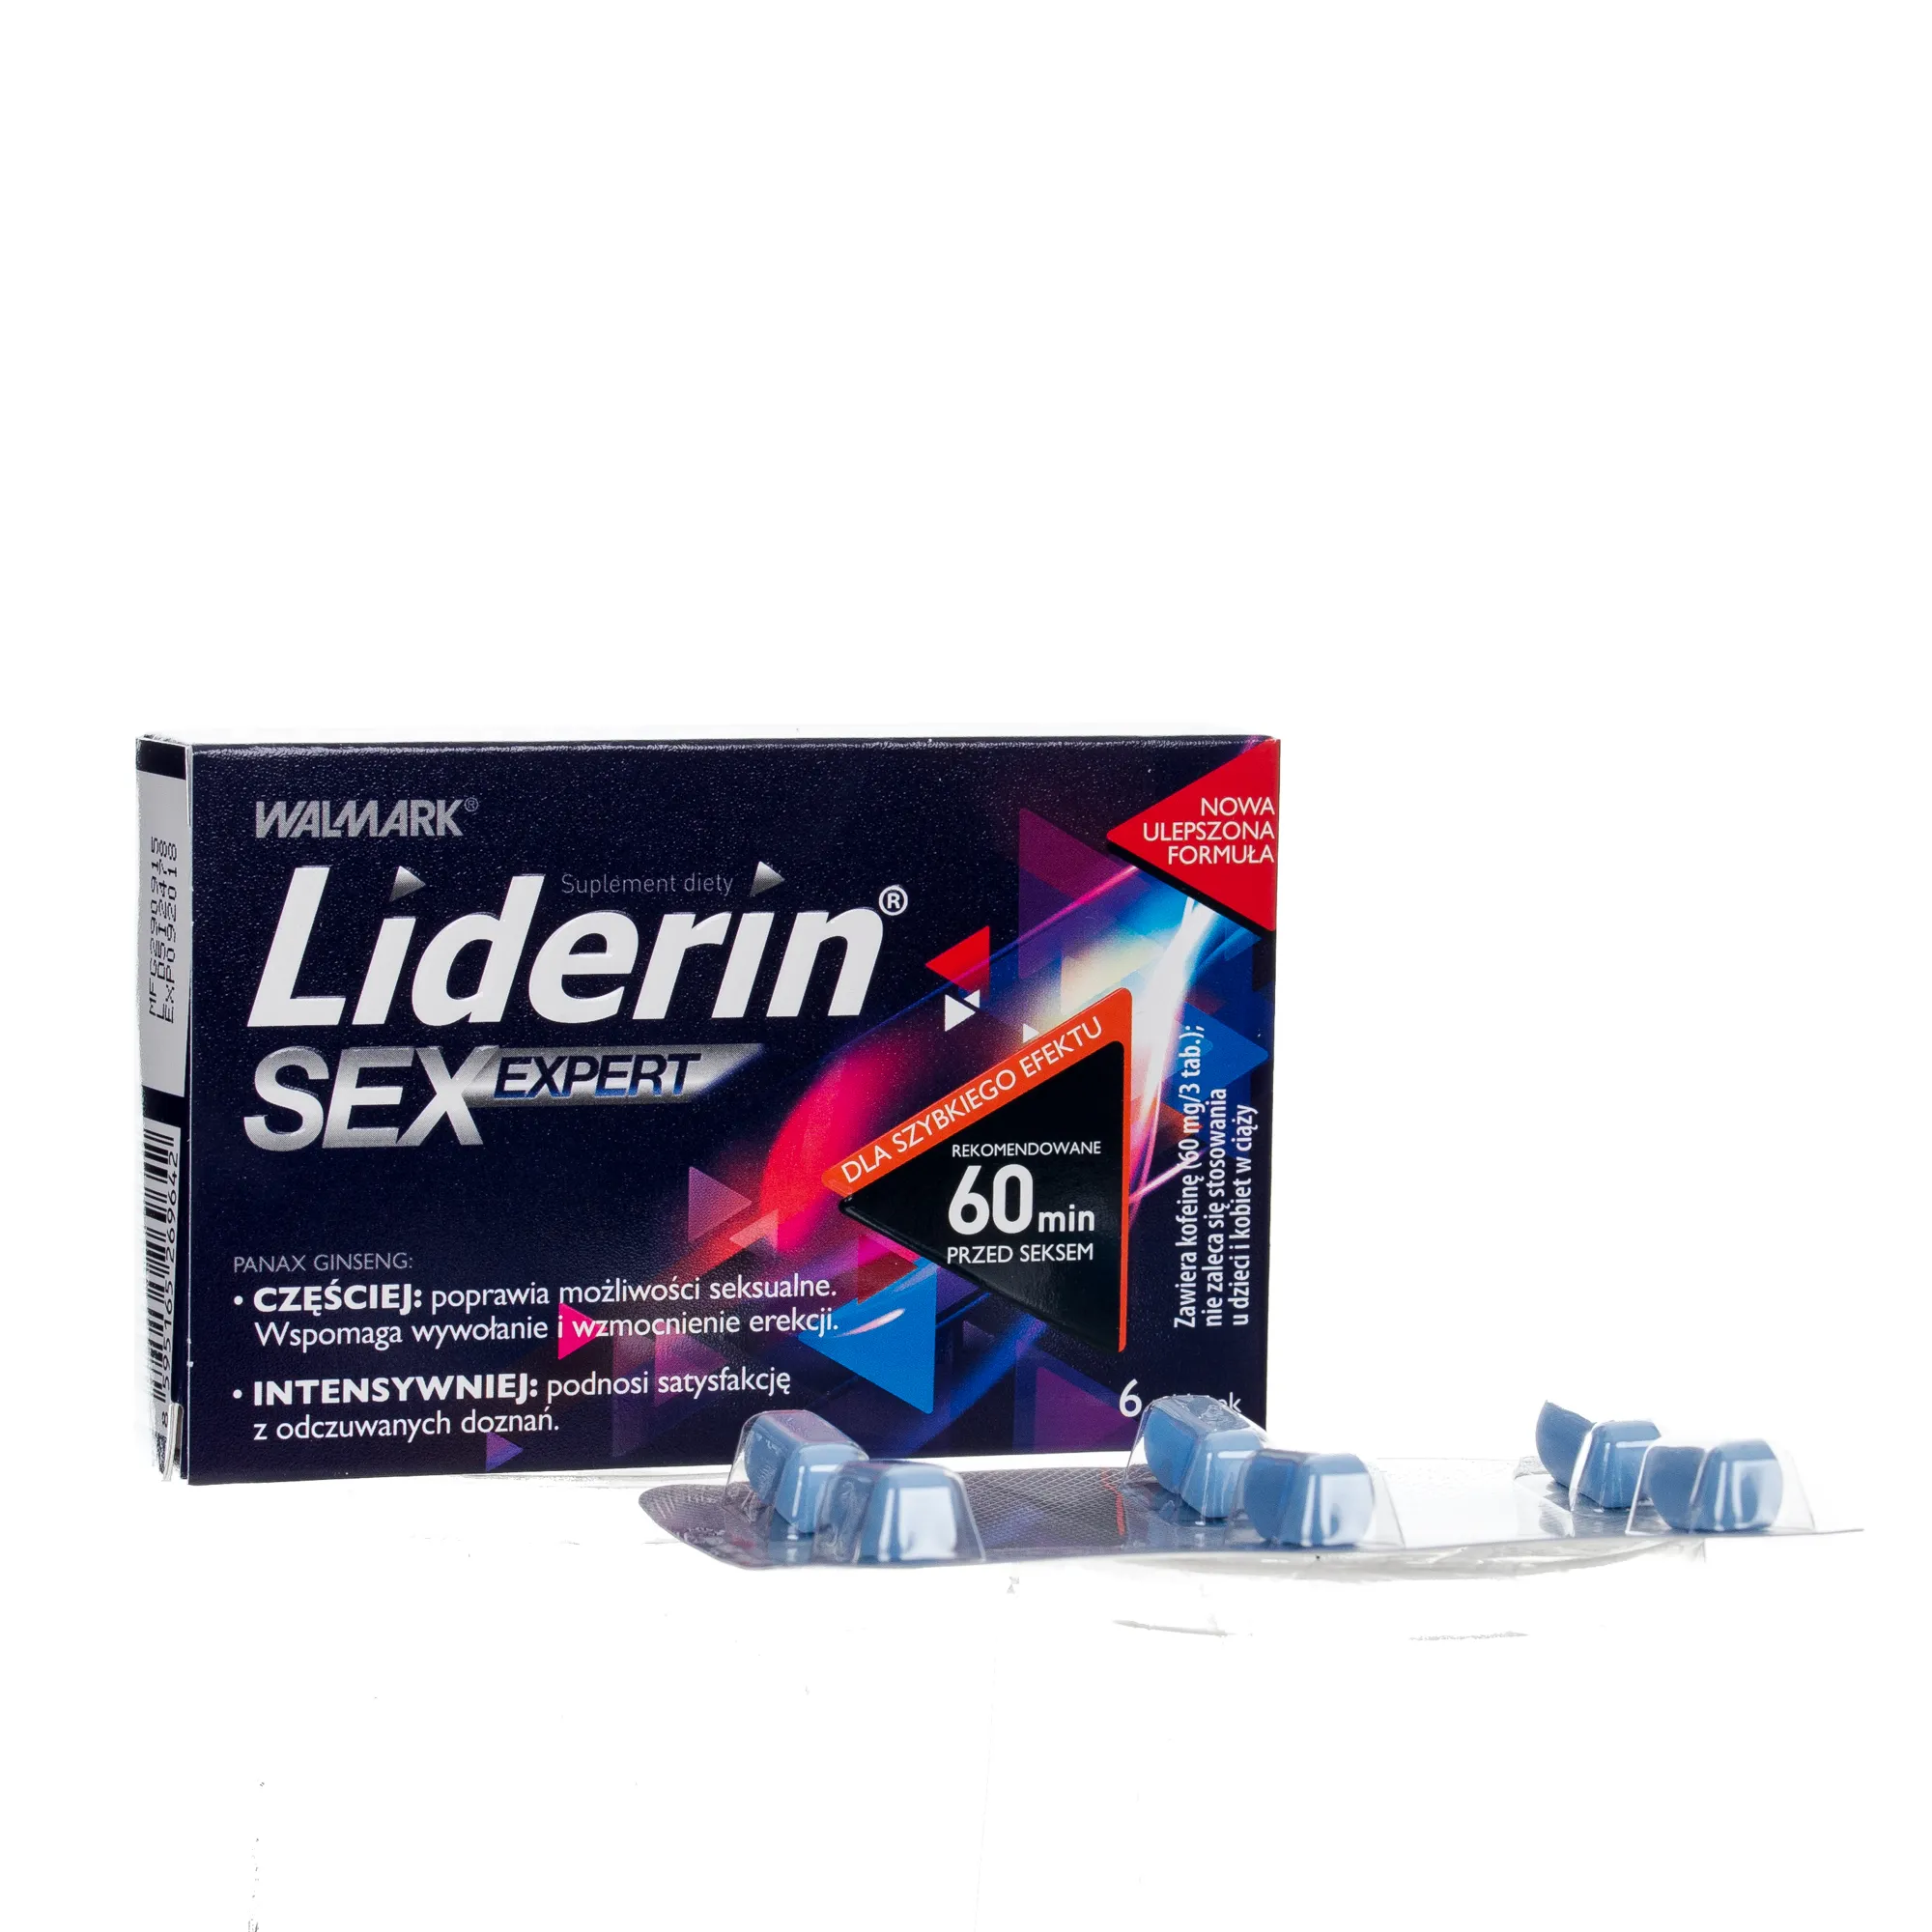 Liderin SexExpert suplement diety, 6 tabletek